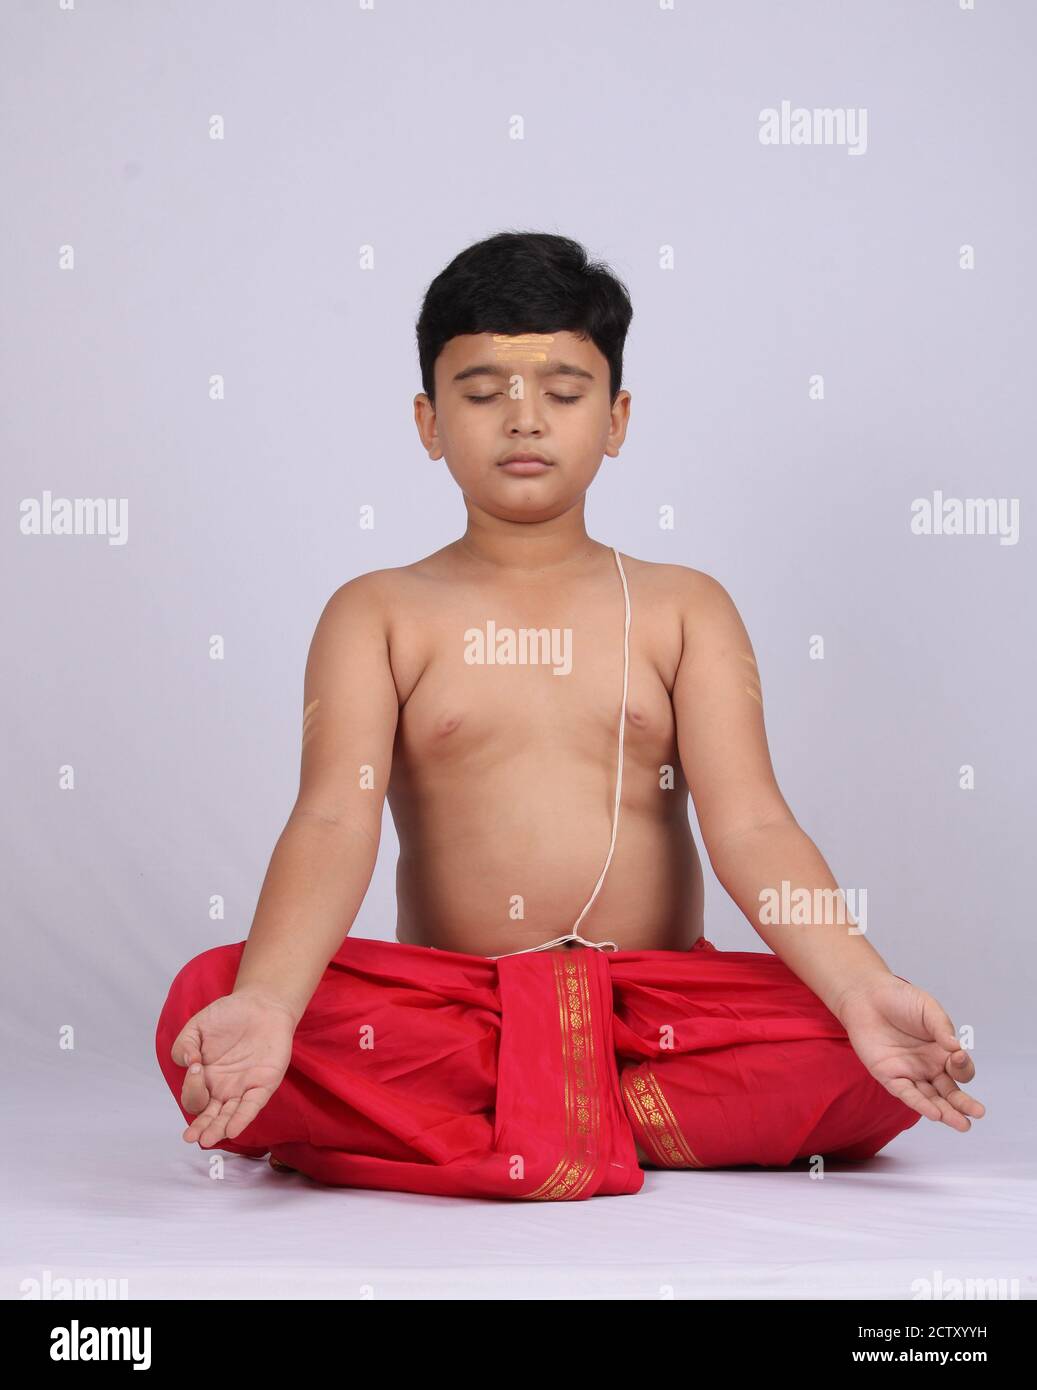 Un jeune enfant indien mignon faisant du yoga sur fond blanc, portant un dhoti. Posture de méditation. Banque D'Images